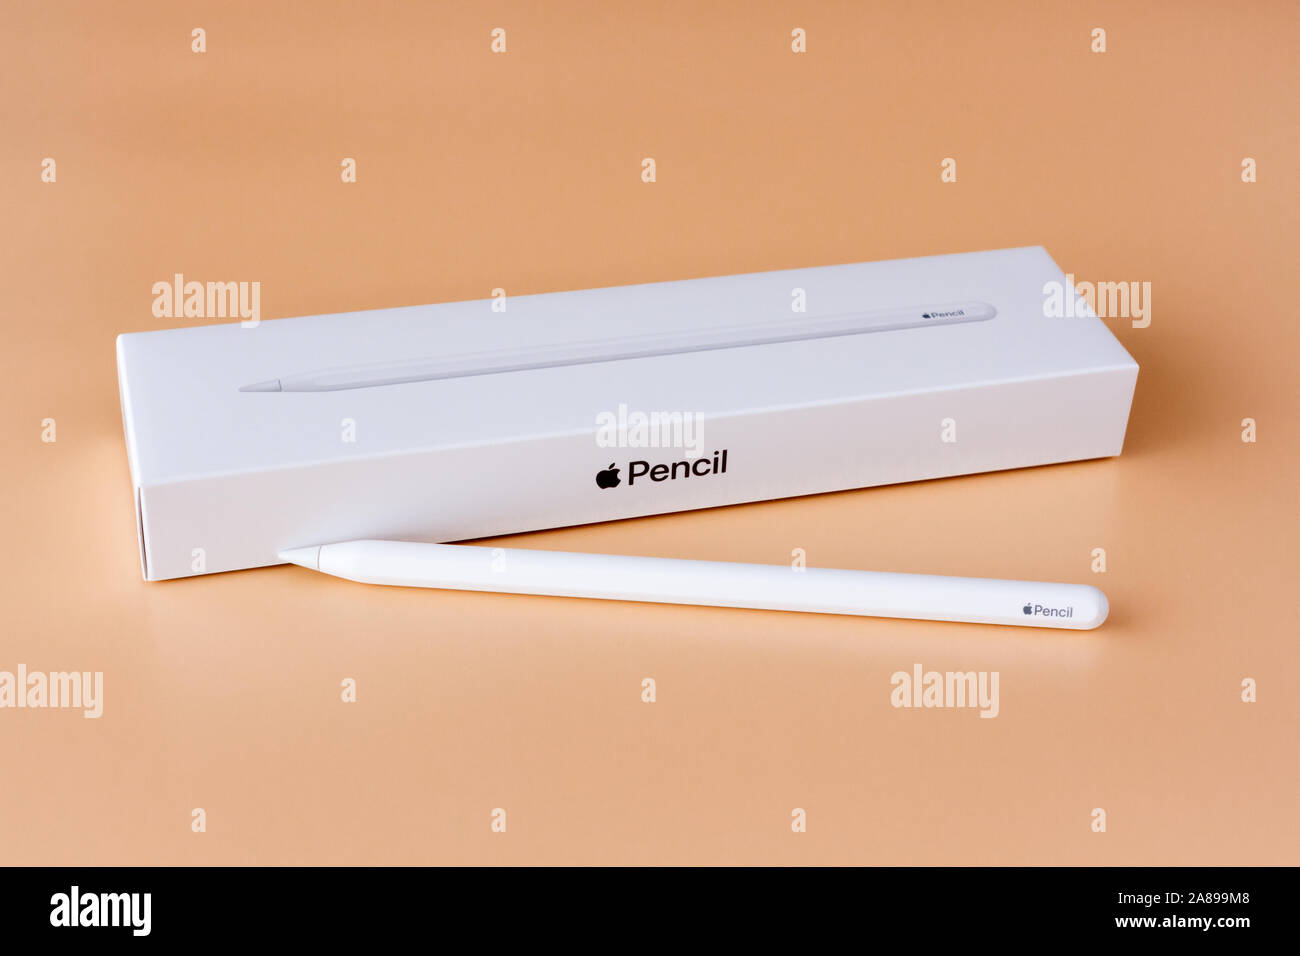 Apple de segunda generación Lápiz stylus para iPad Pro Fotografía